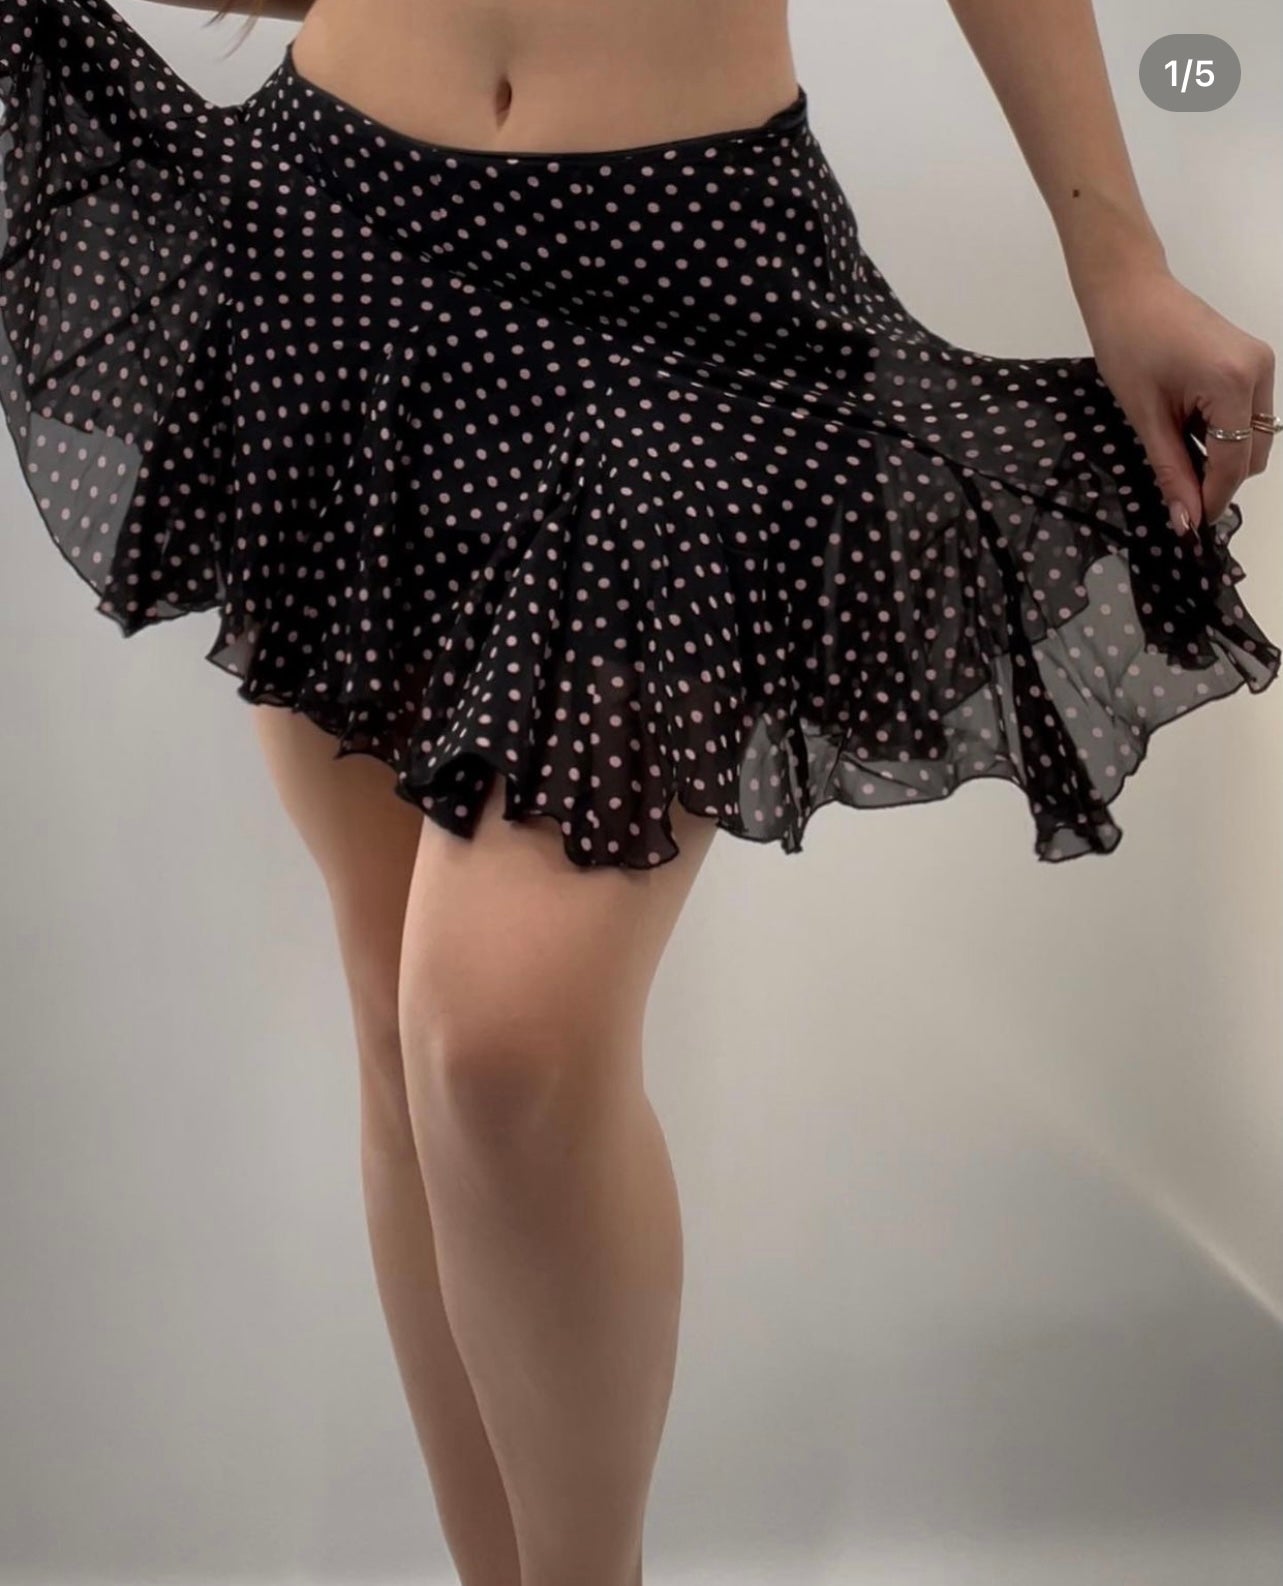 Vintage Polka Dot Mini Skirt (SzM)